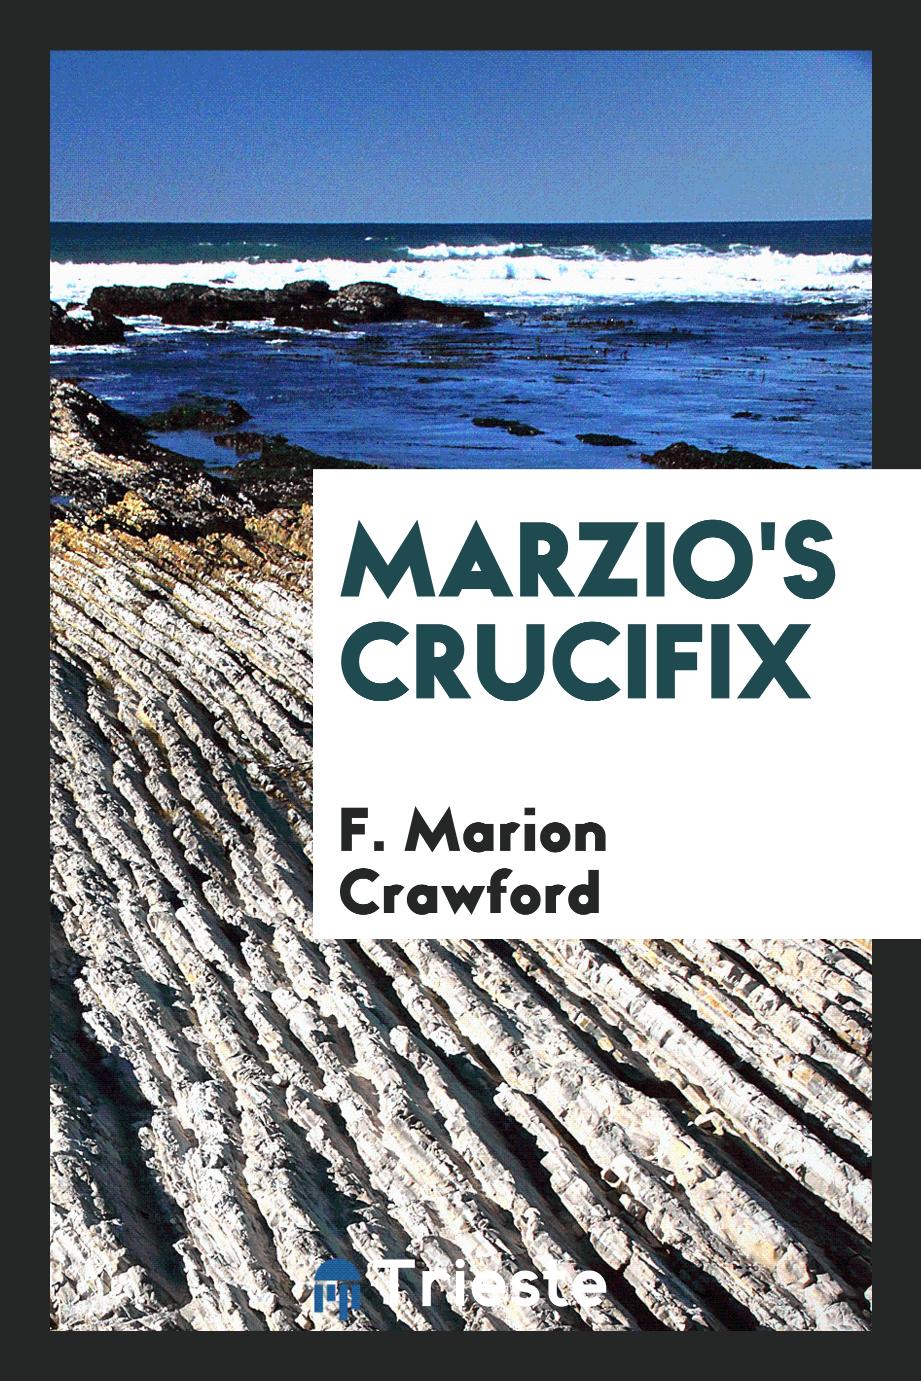 Marzio's Crucifix